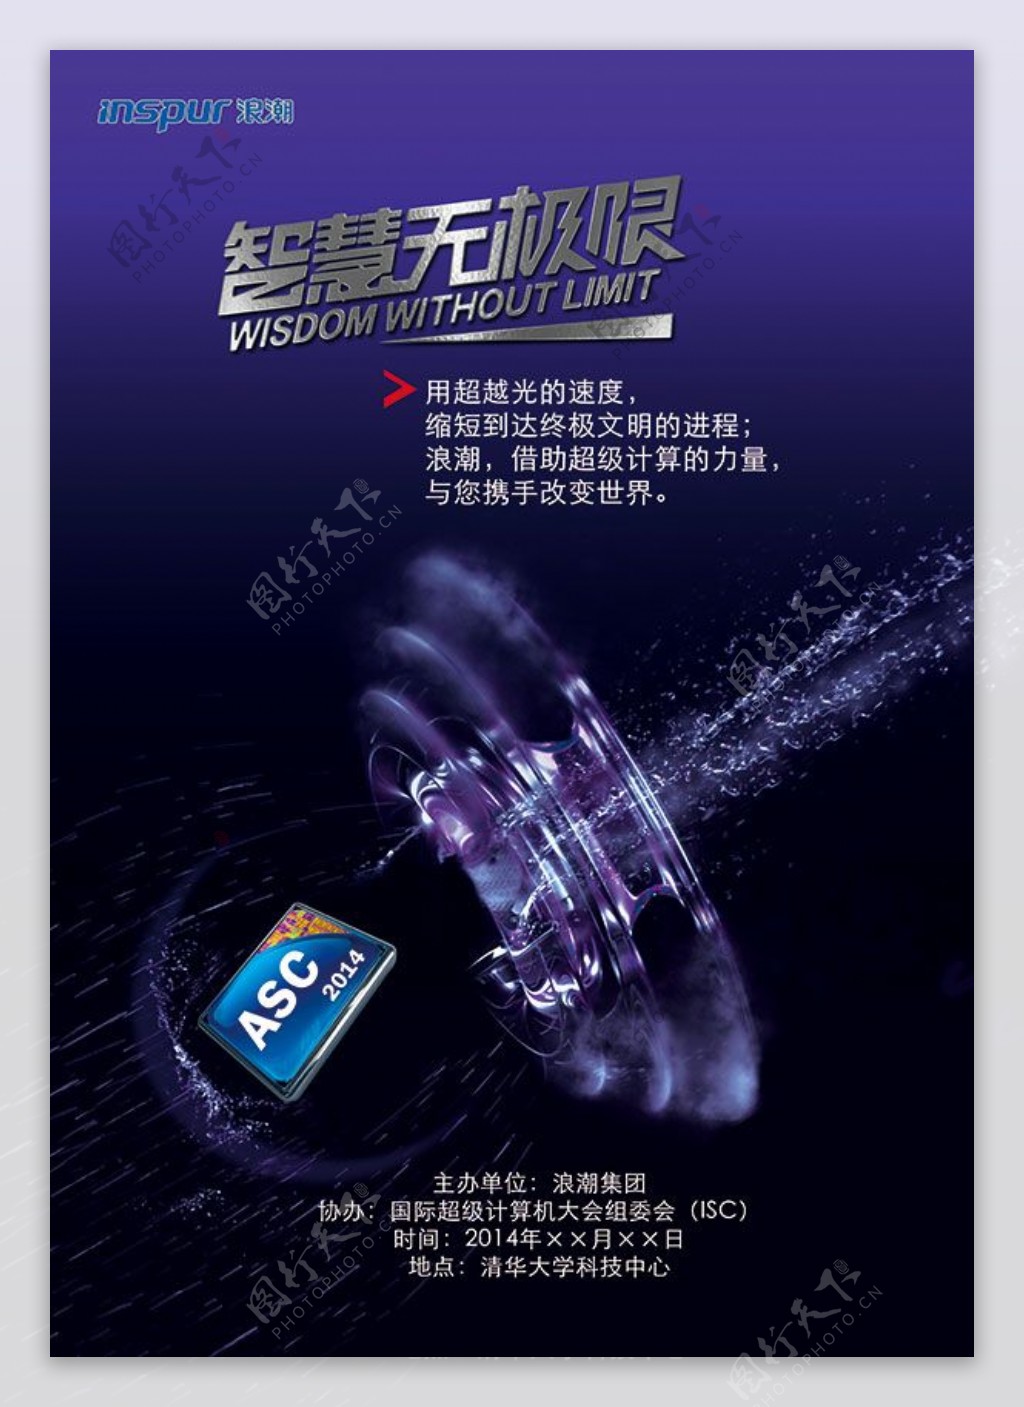 超光速计算机芯片宣传广告设计